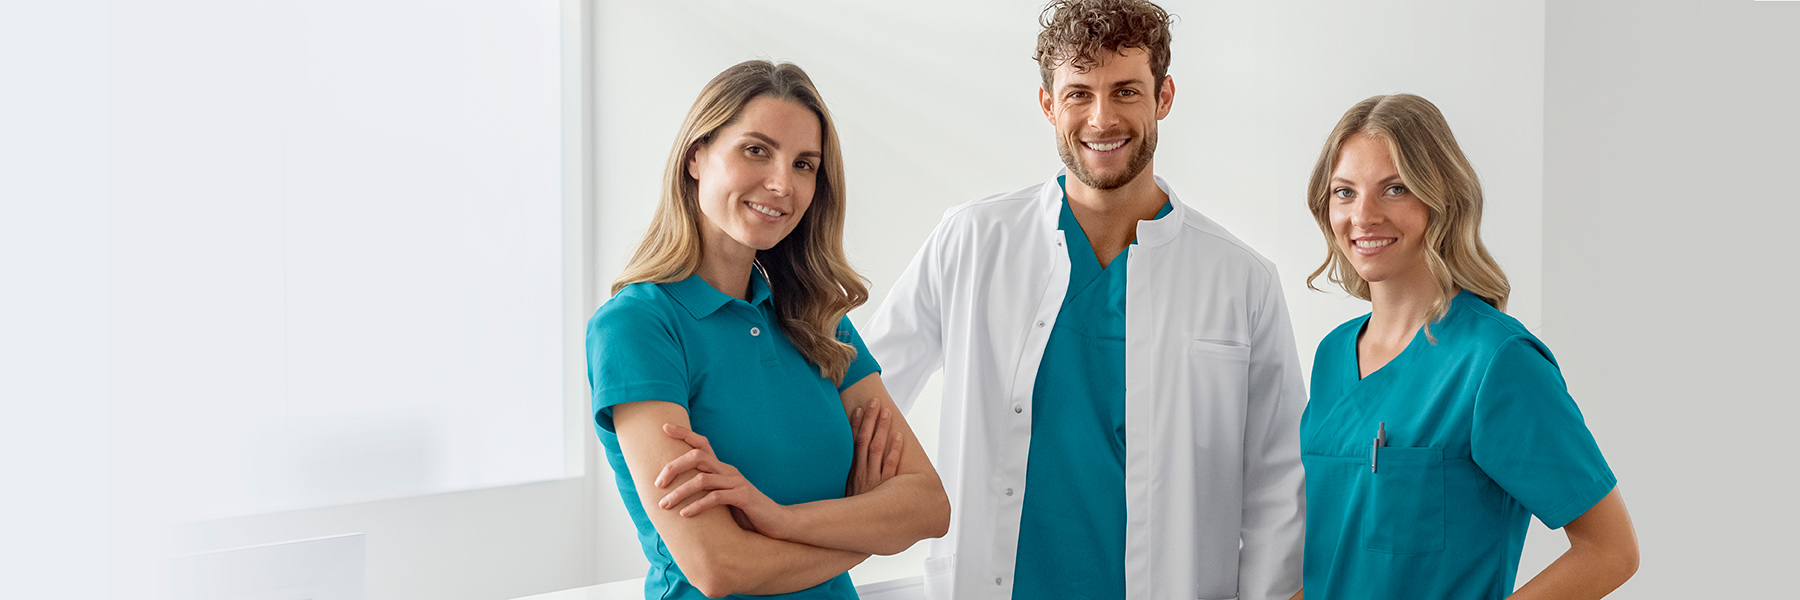 Een man in een doktersjas en turquoise jurk en twee vrouwen in poloshirts en turquoise jassen in een medisch kantoor